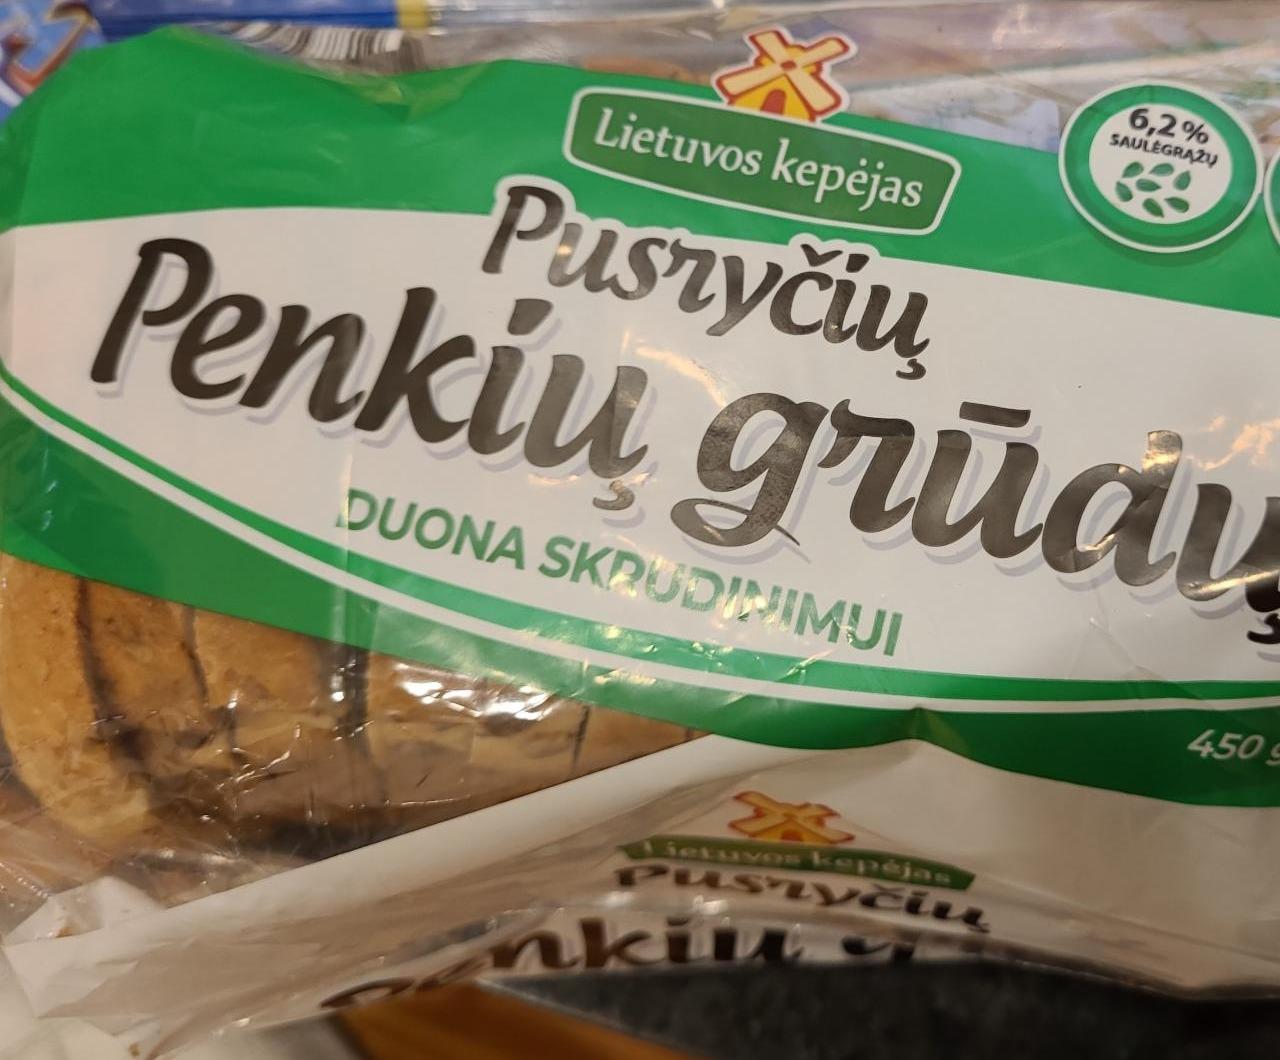 Фото - Тостовый хлеб зерновой Penkiu grudu Lietuvos kepejas